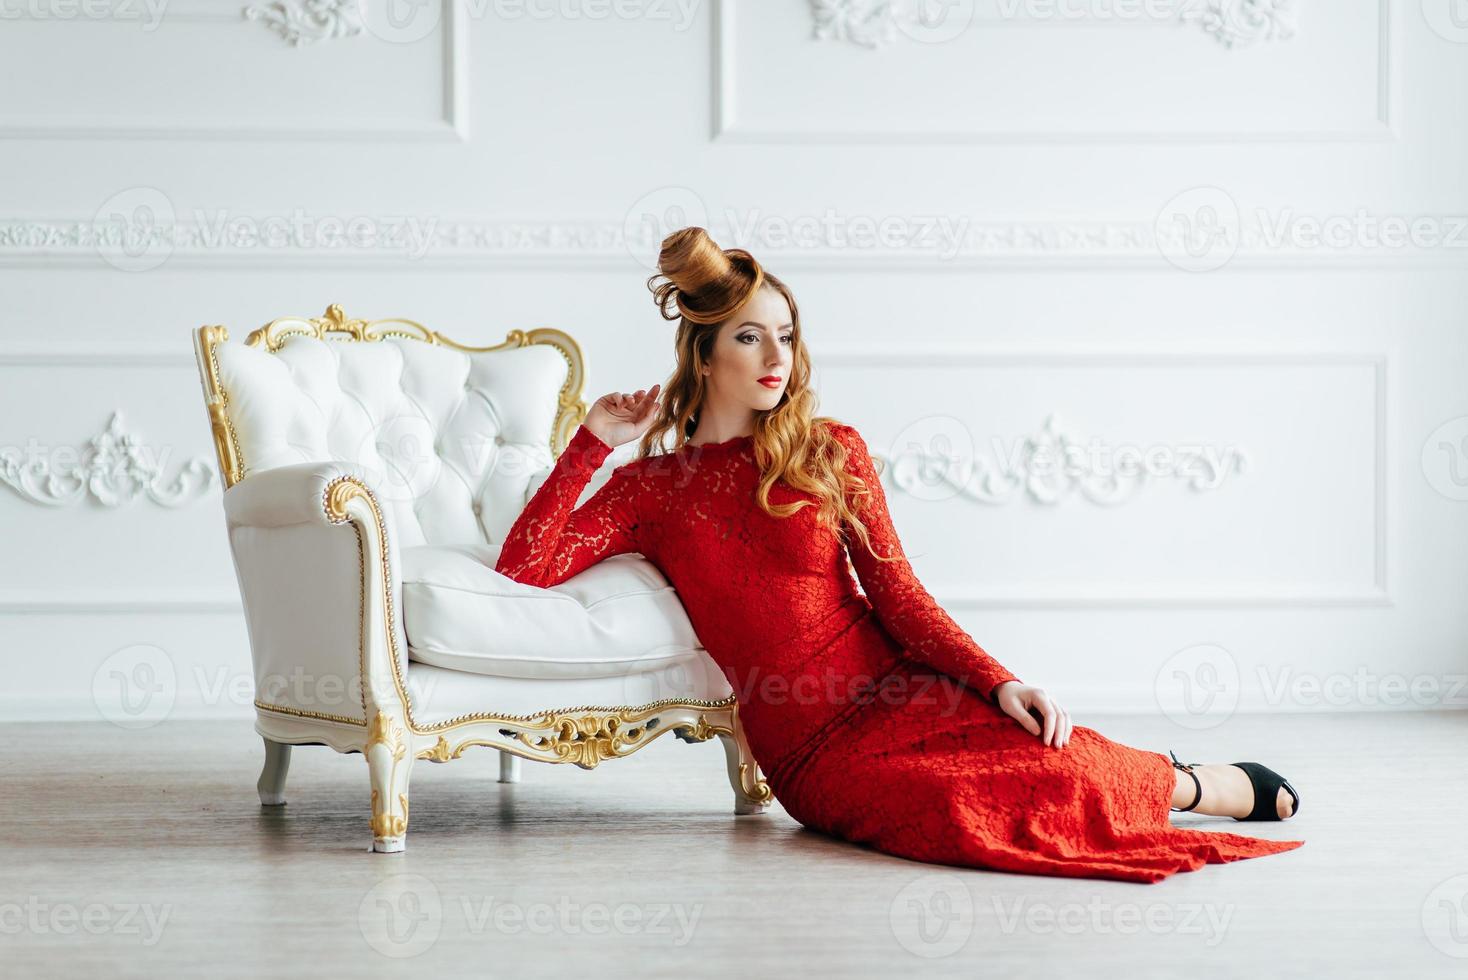 giovane ragazza con i capelli rossi in un vestito rosso brillante in una stanza luminosa foto